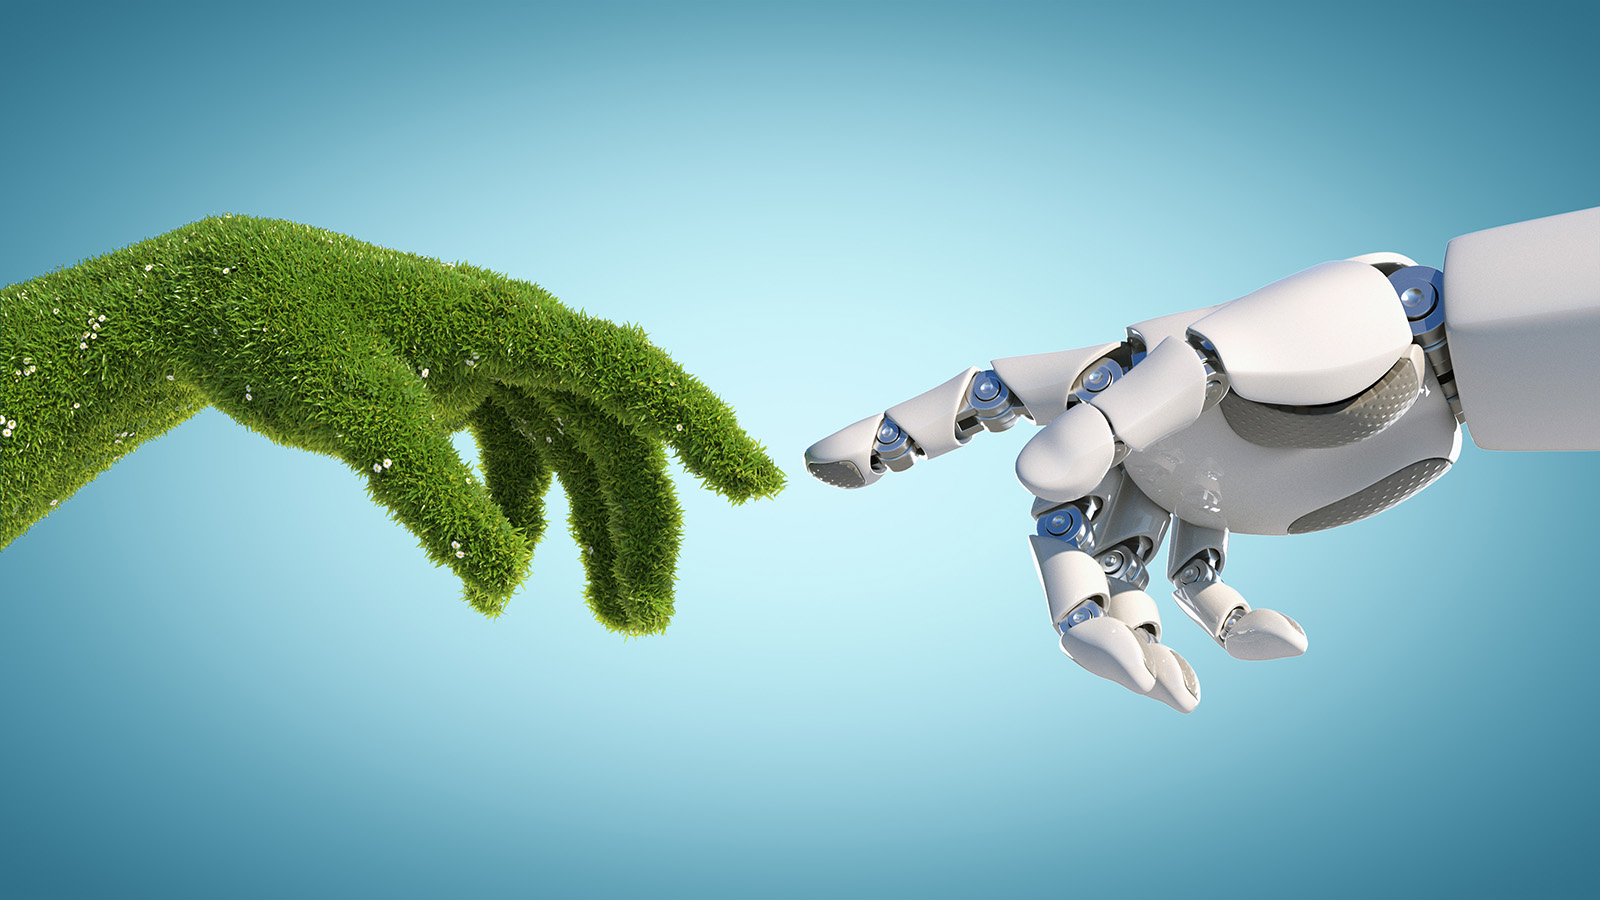 Konsept tegning: en hånd dekket i gress treffer en robot hånd